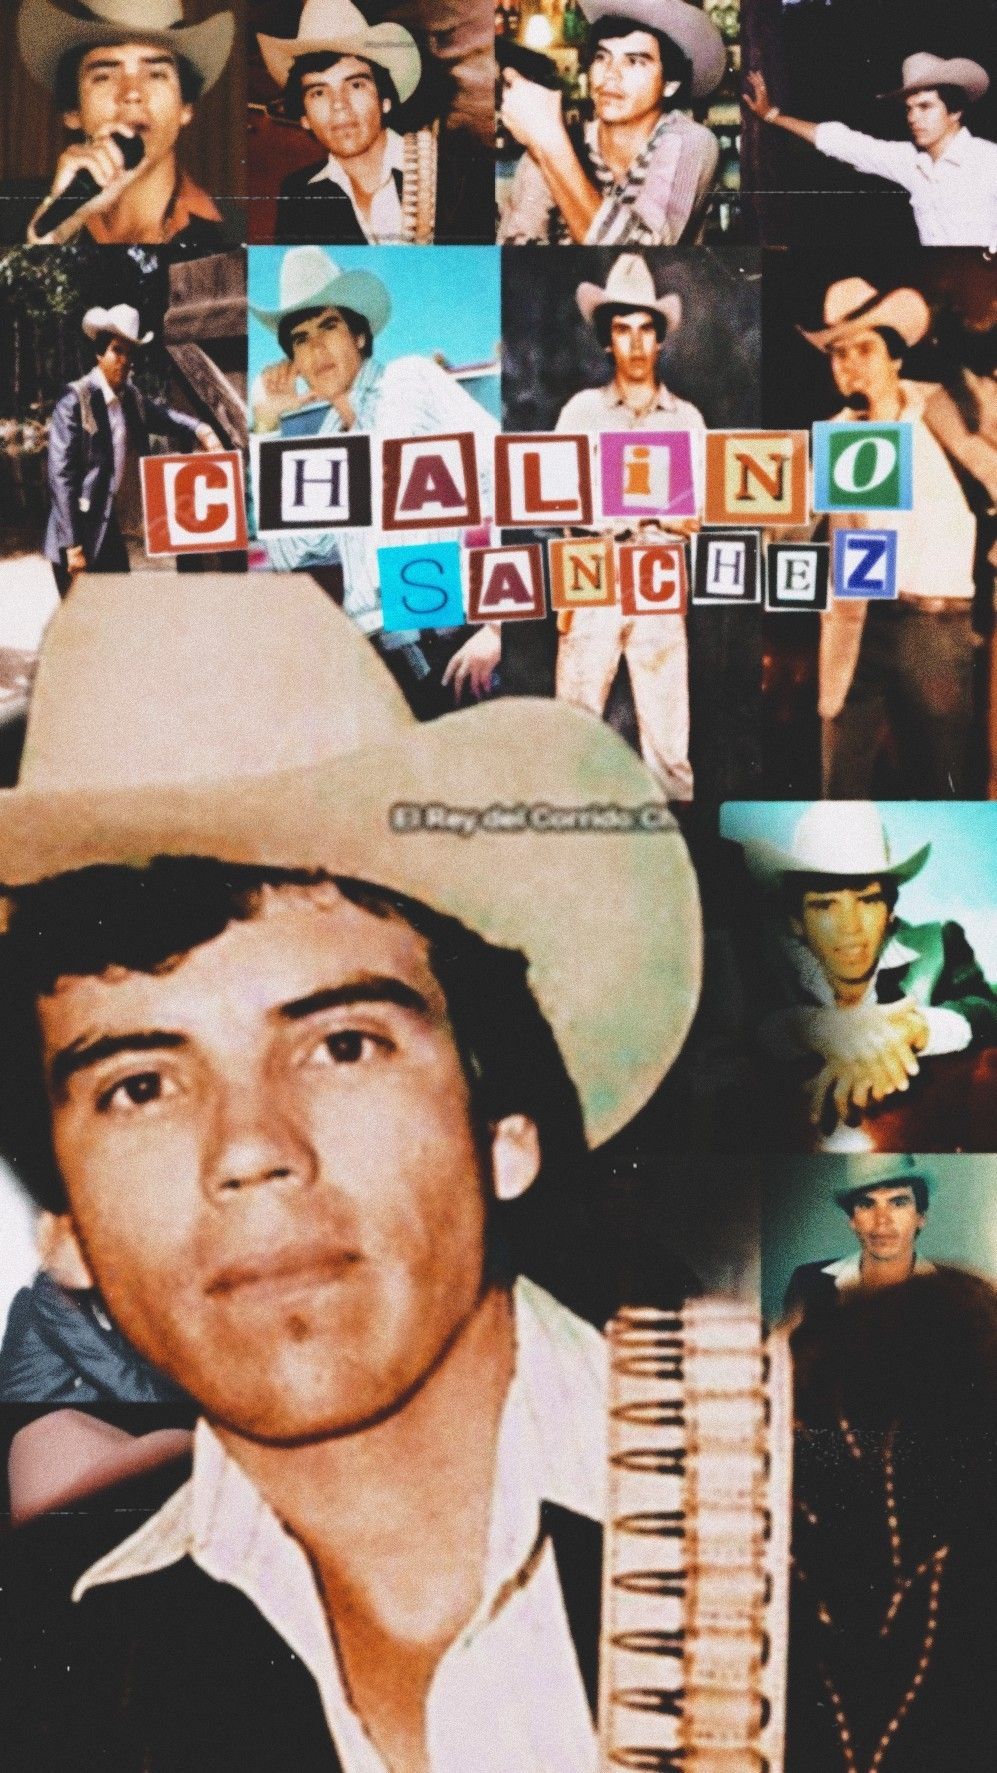 Chalino Sanchez wallpaper. Wallpaper iphone cute, Emoji wallpaper iphone, iPhone wallpaper tumblr aesthetic